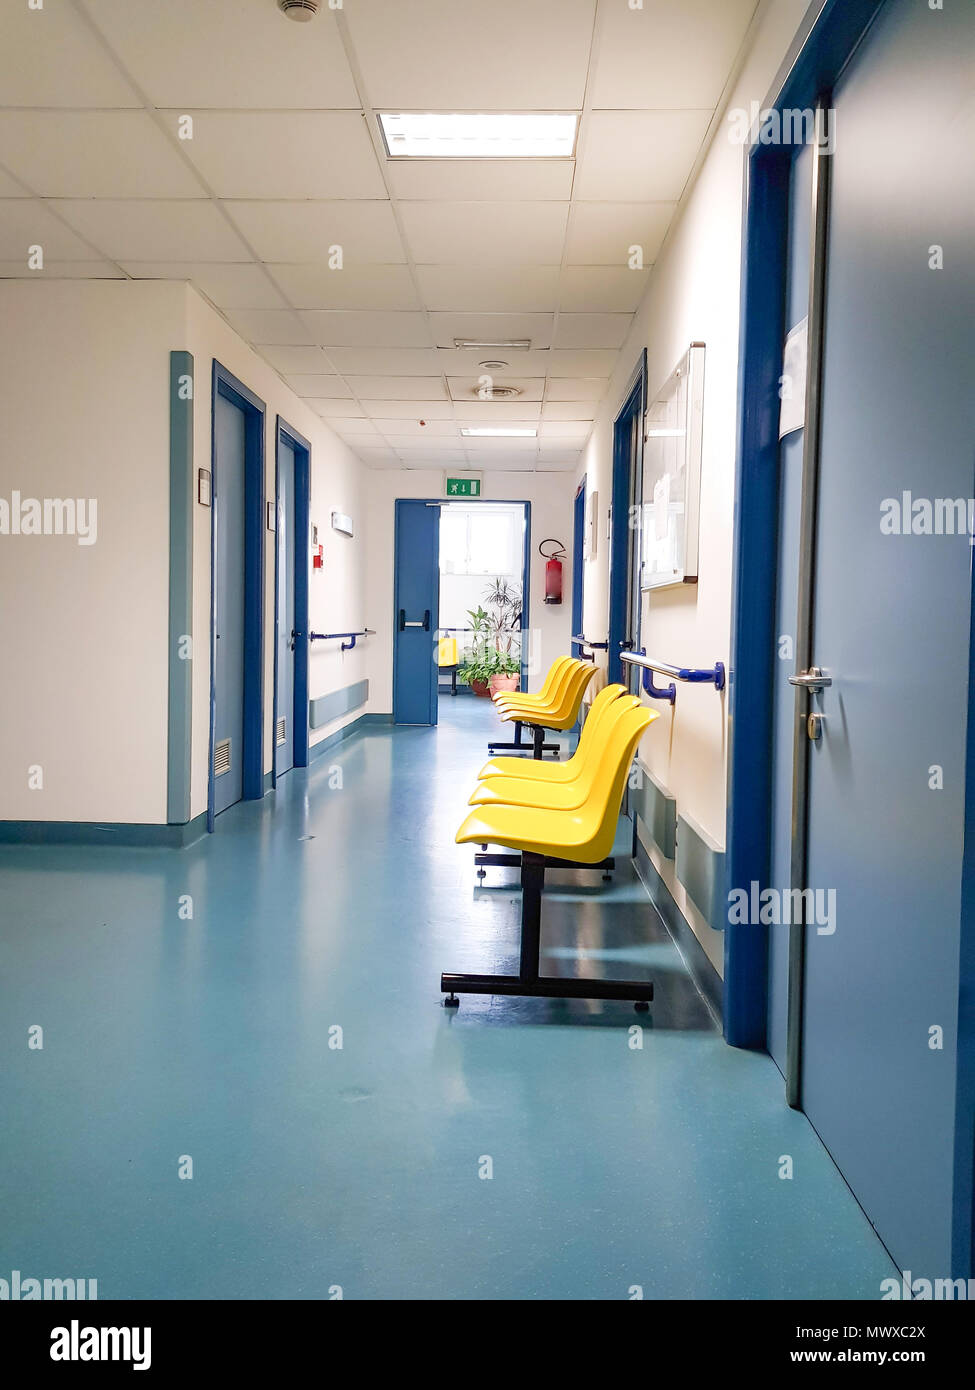 Stühle im Krankenhaus Flur, Krankenhaus innere, leere Stühle für das Warten  im Krankenhaus Stockfotografie - Alamy